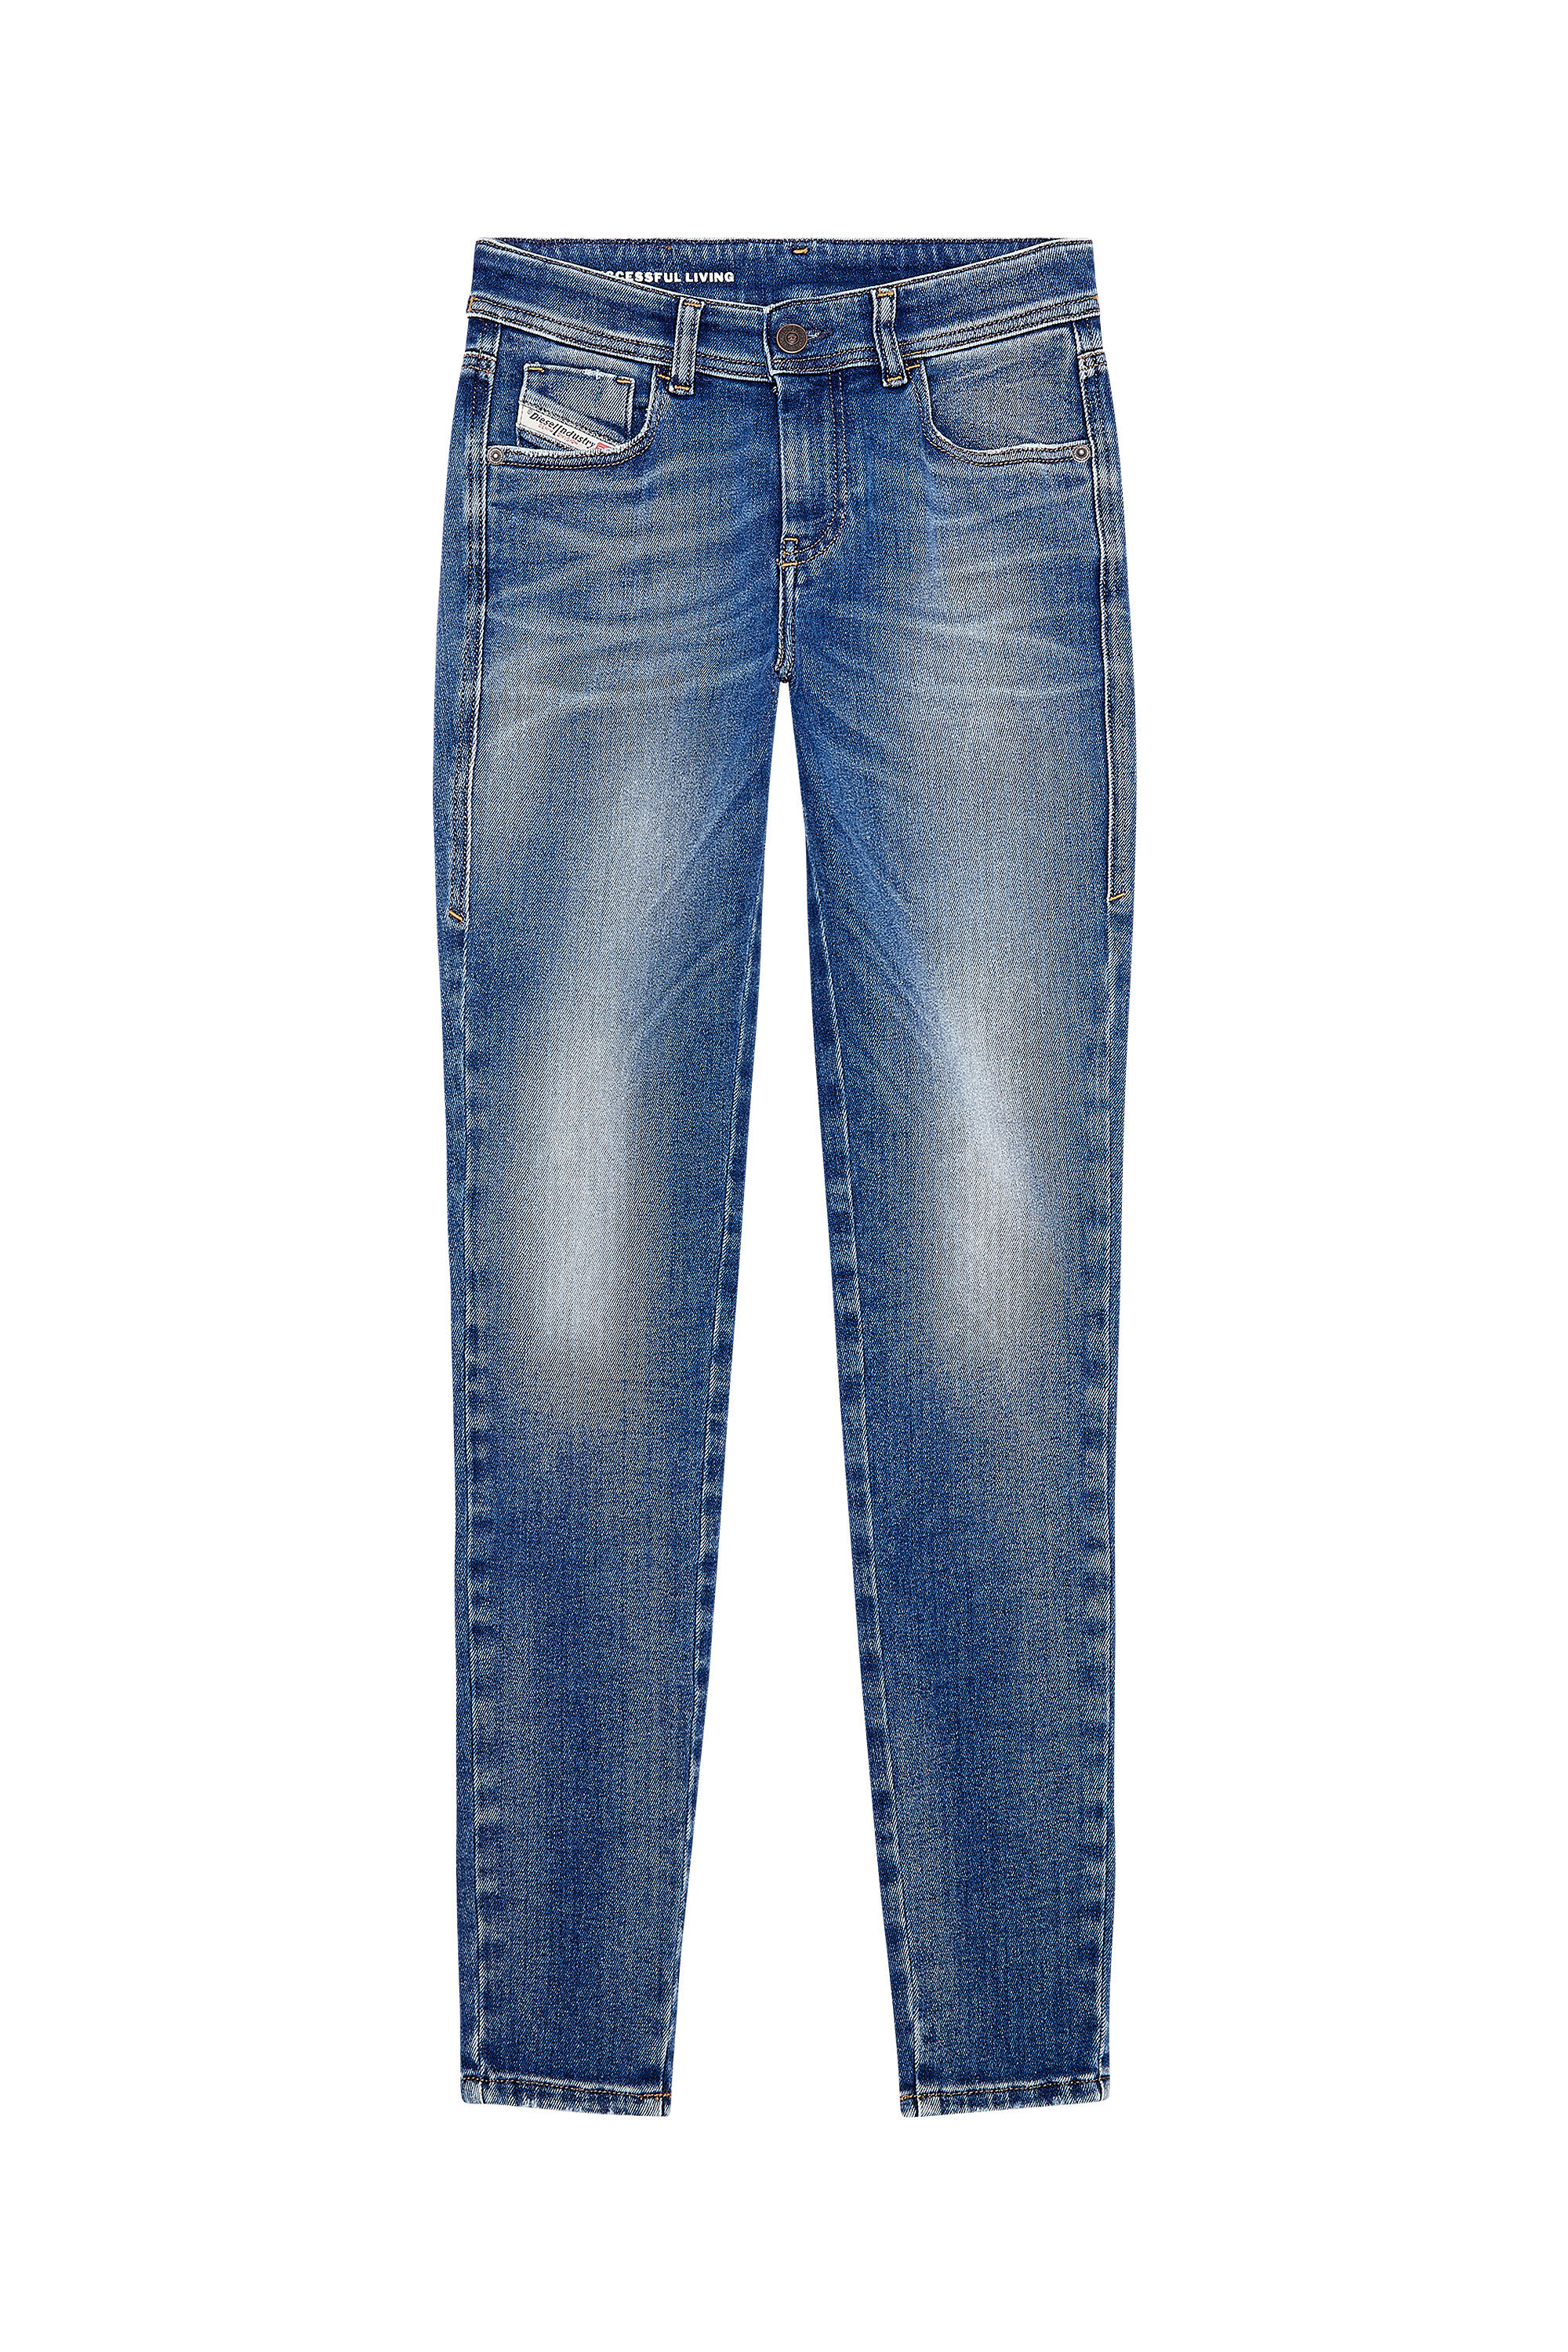 Diesel - Super skinny Jeans 2017 Slandy 09H90, Medium blue - Image 2